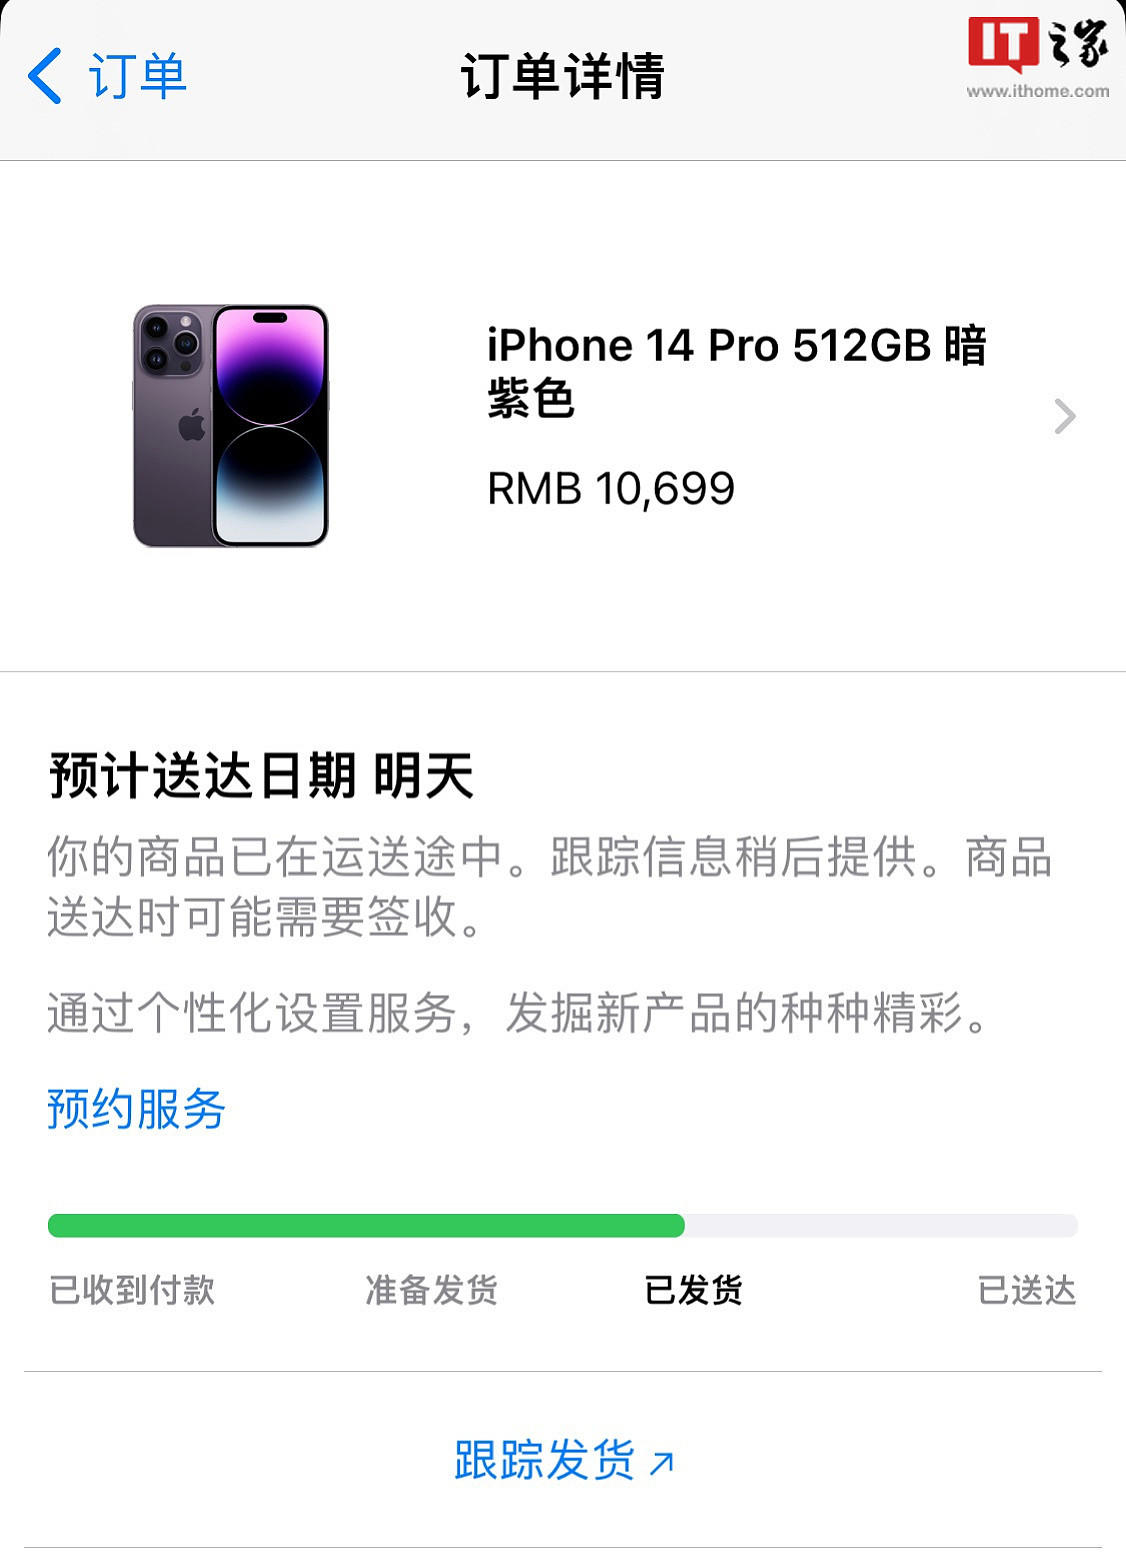 苹果 iPhone 14 / 14 Pro / 14 Pro Max 国内首批订单已发货 - 1